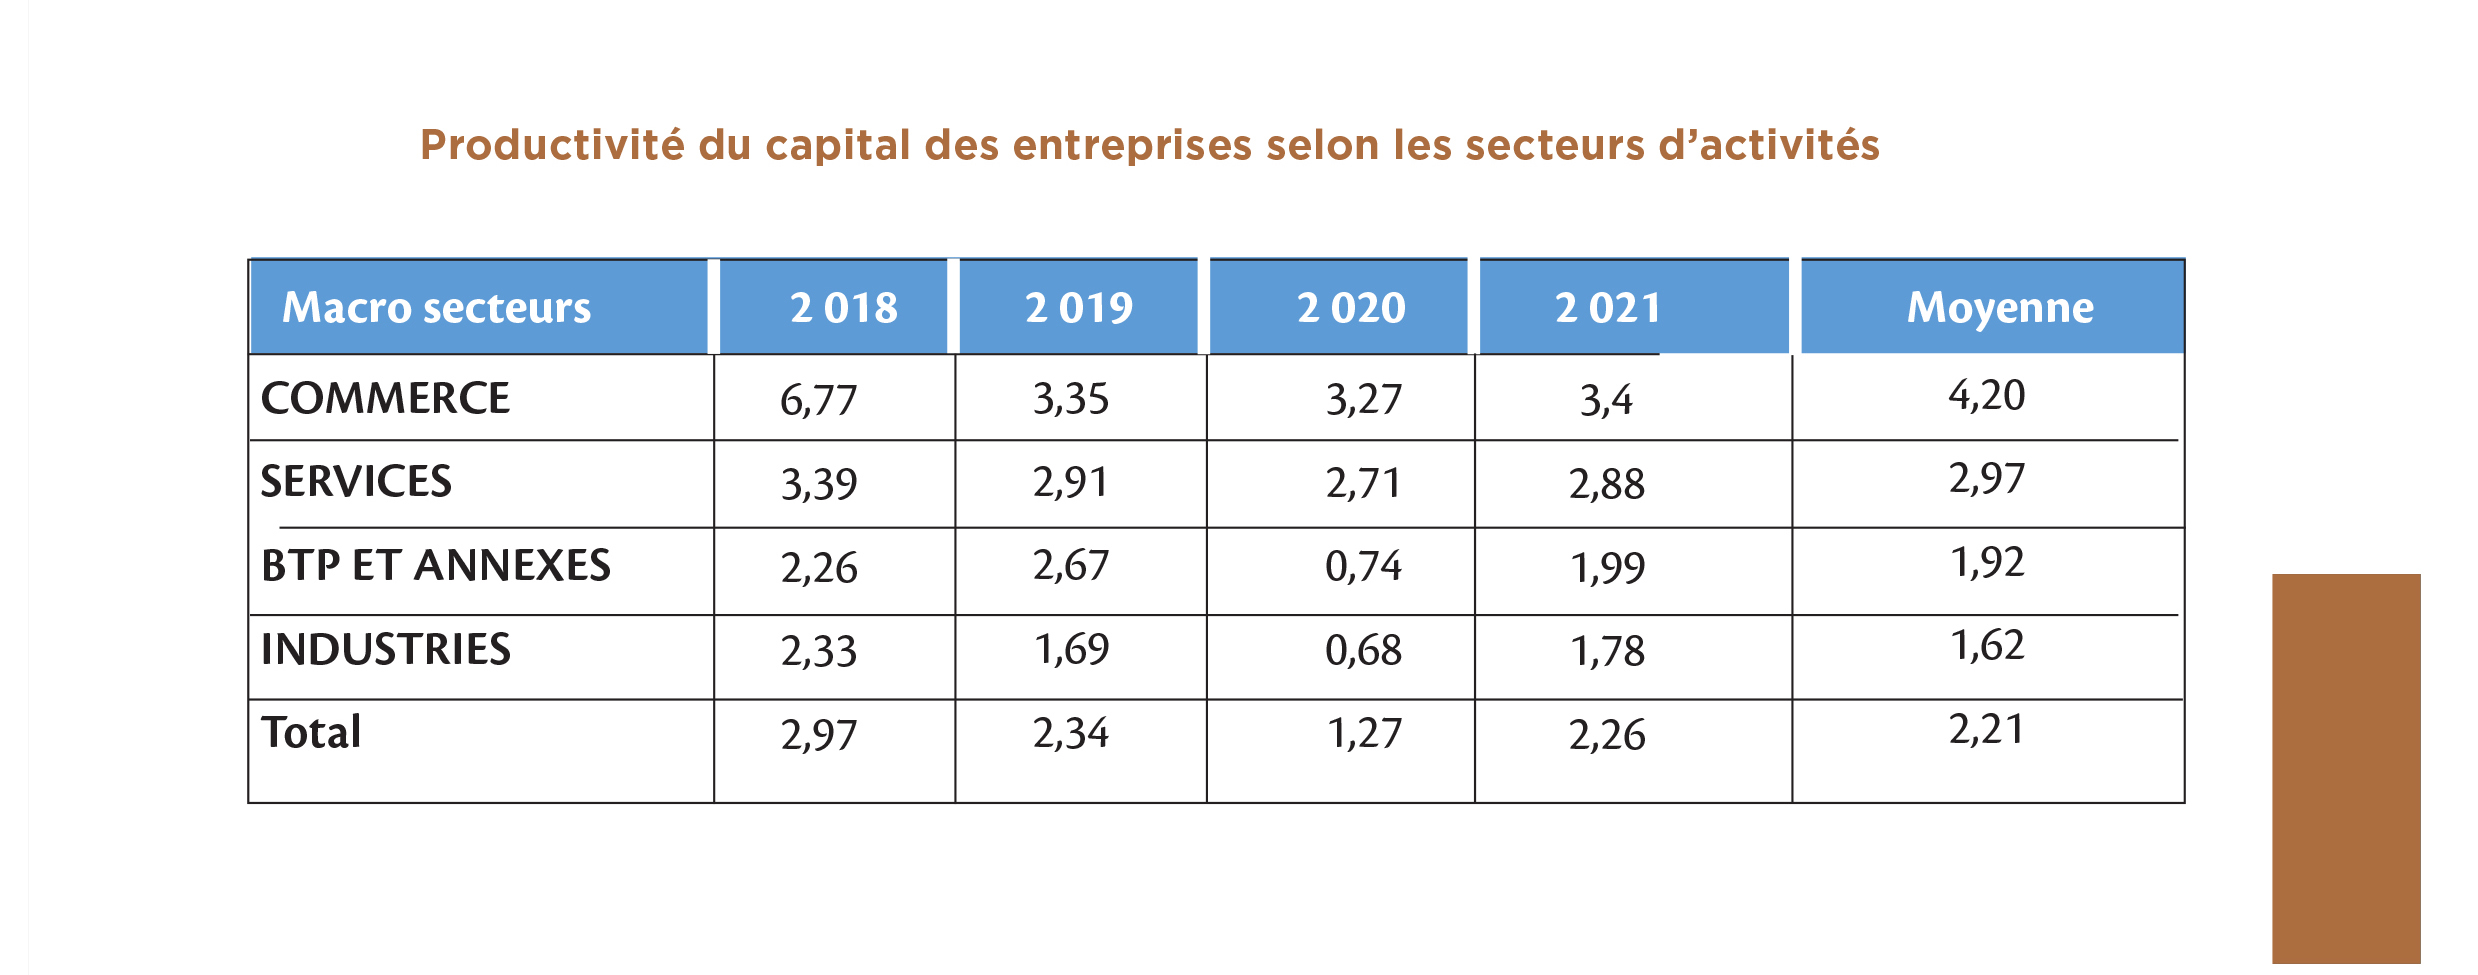 Sénégal : La productivité du capital reste élevée dans les entreprises commerciales et dans les Services